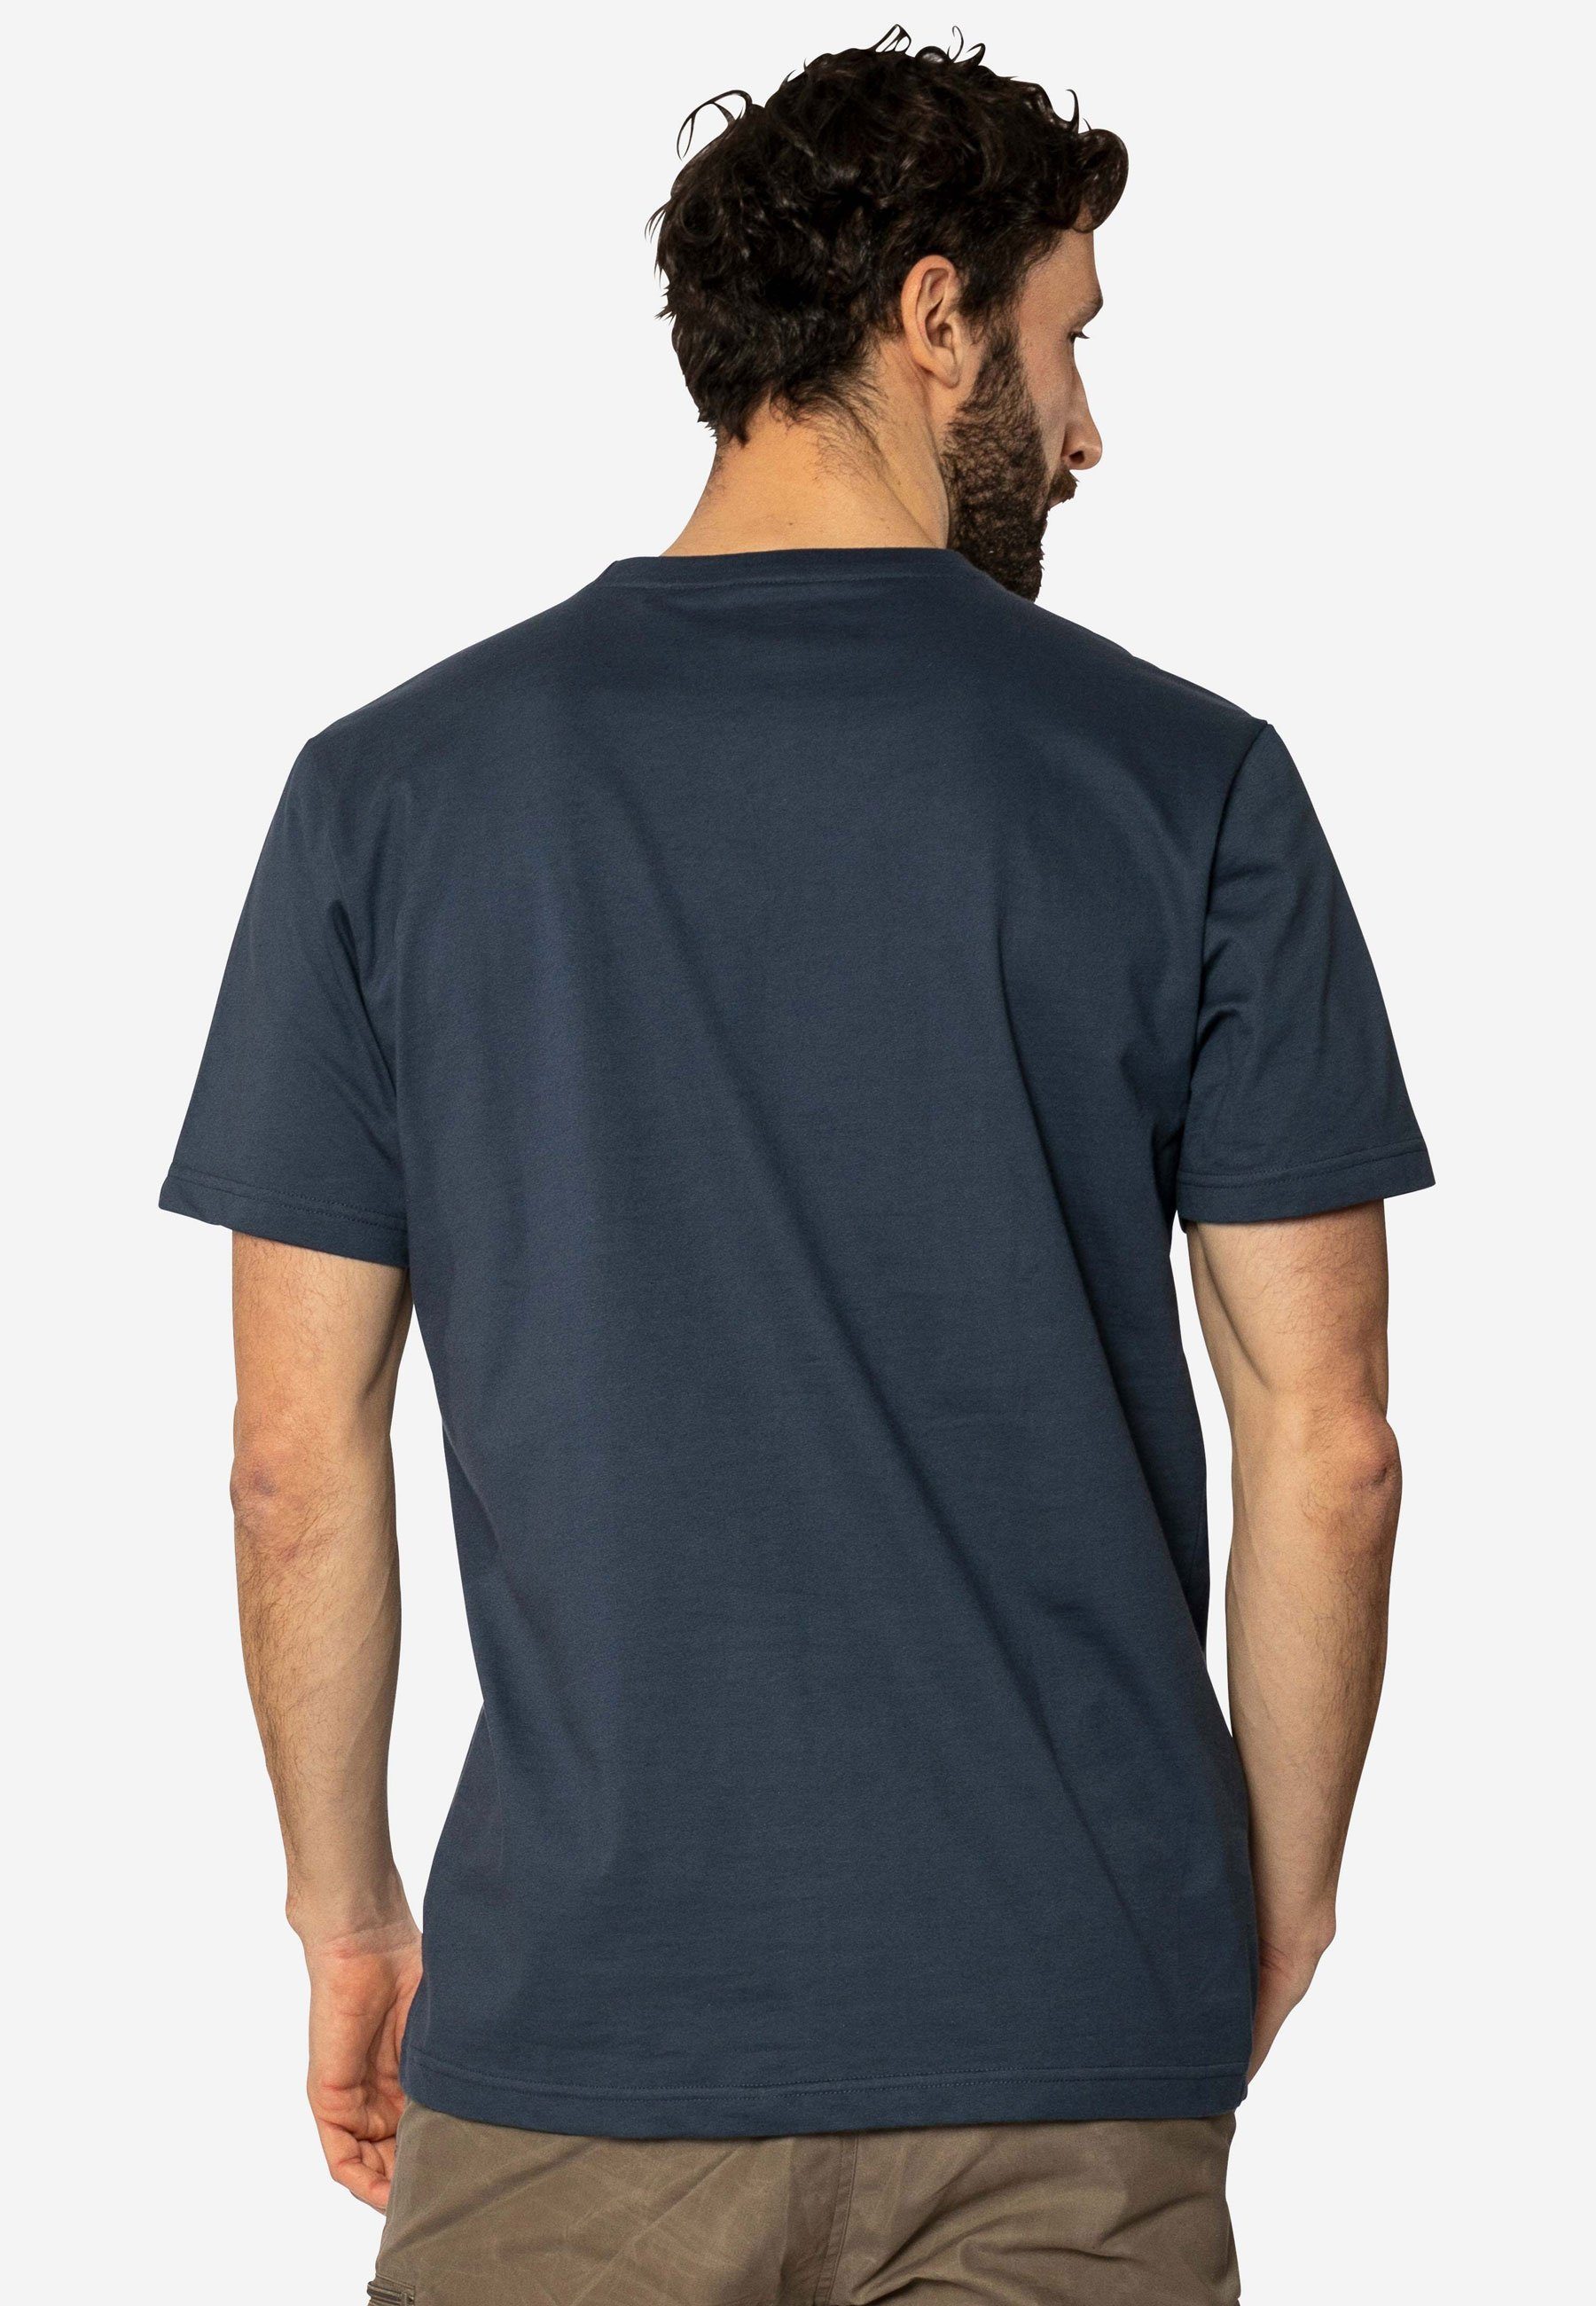 Elkline Print Stimmt darkblue T-Shirt Stabil VW Bulli Kurzarm Alles Brust